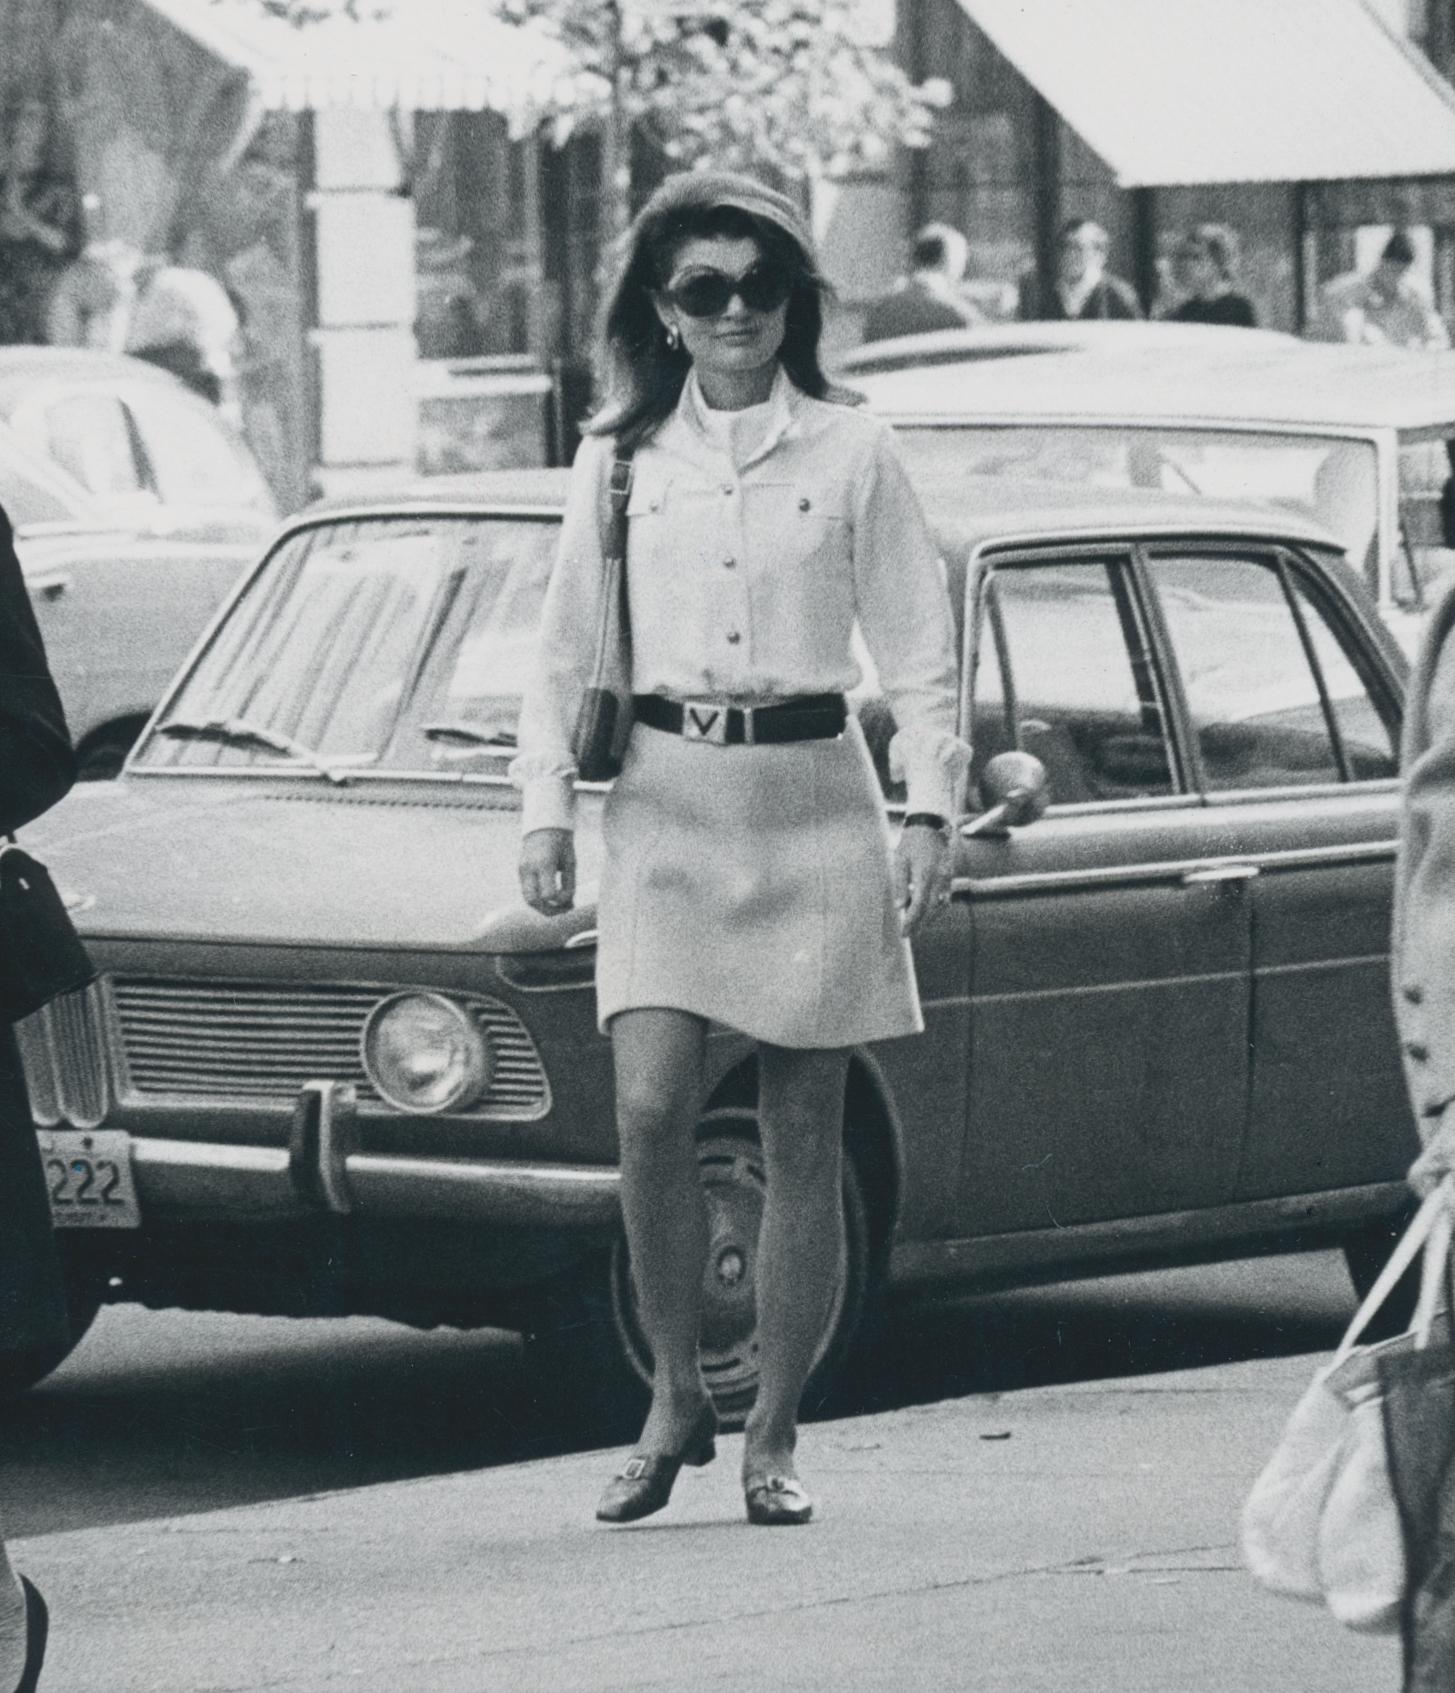 Street Photography von Jackie Onassis; Schwarz-Weiß, 1970er Jahre, 25,2 x 20,2 cm (Moderne), Art, von Thomas J. Wargacki